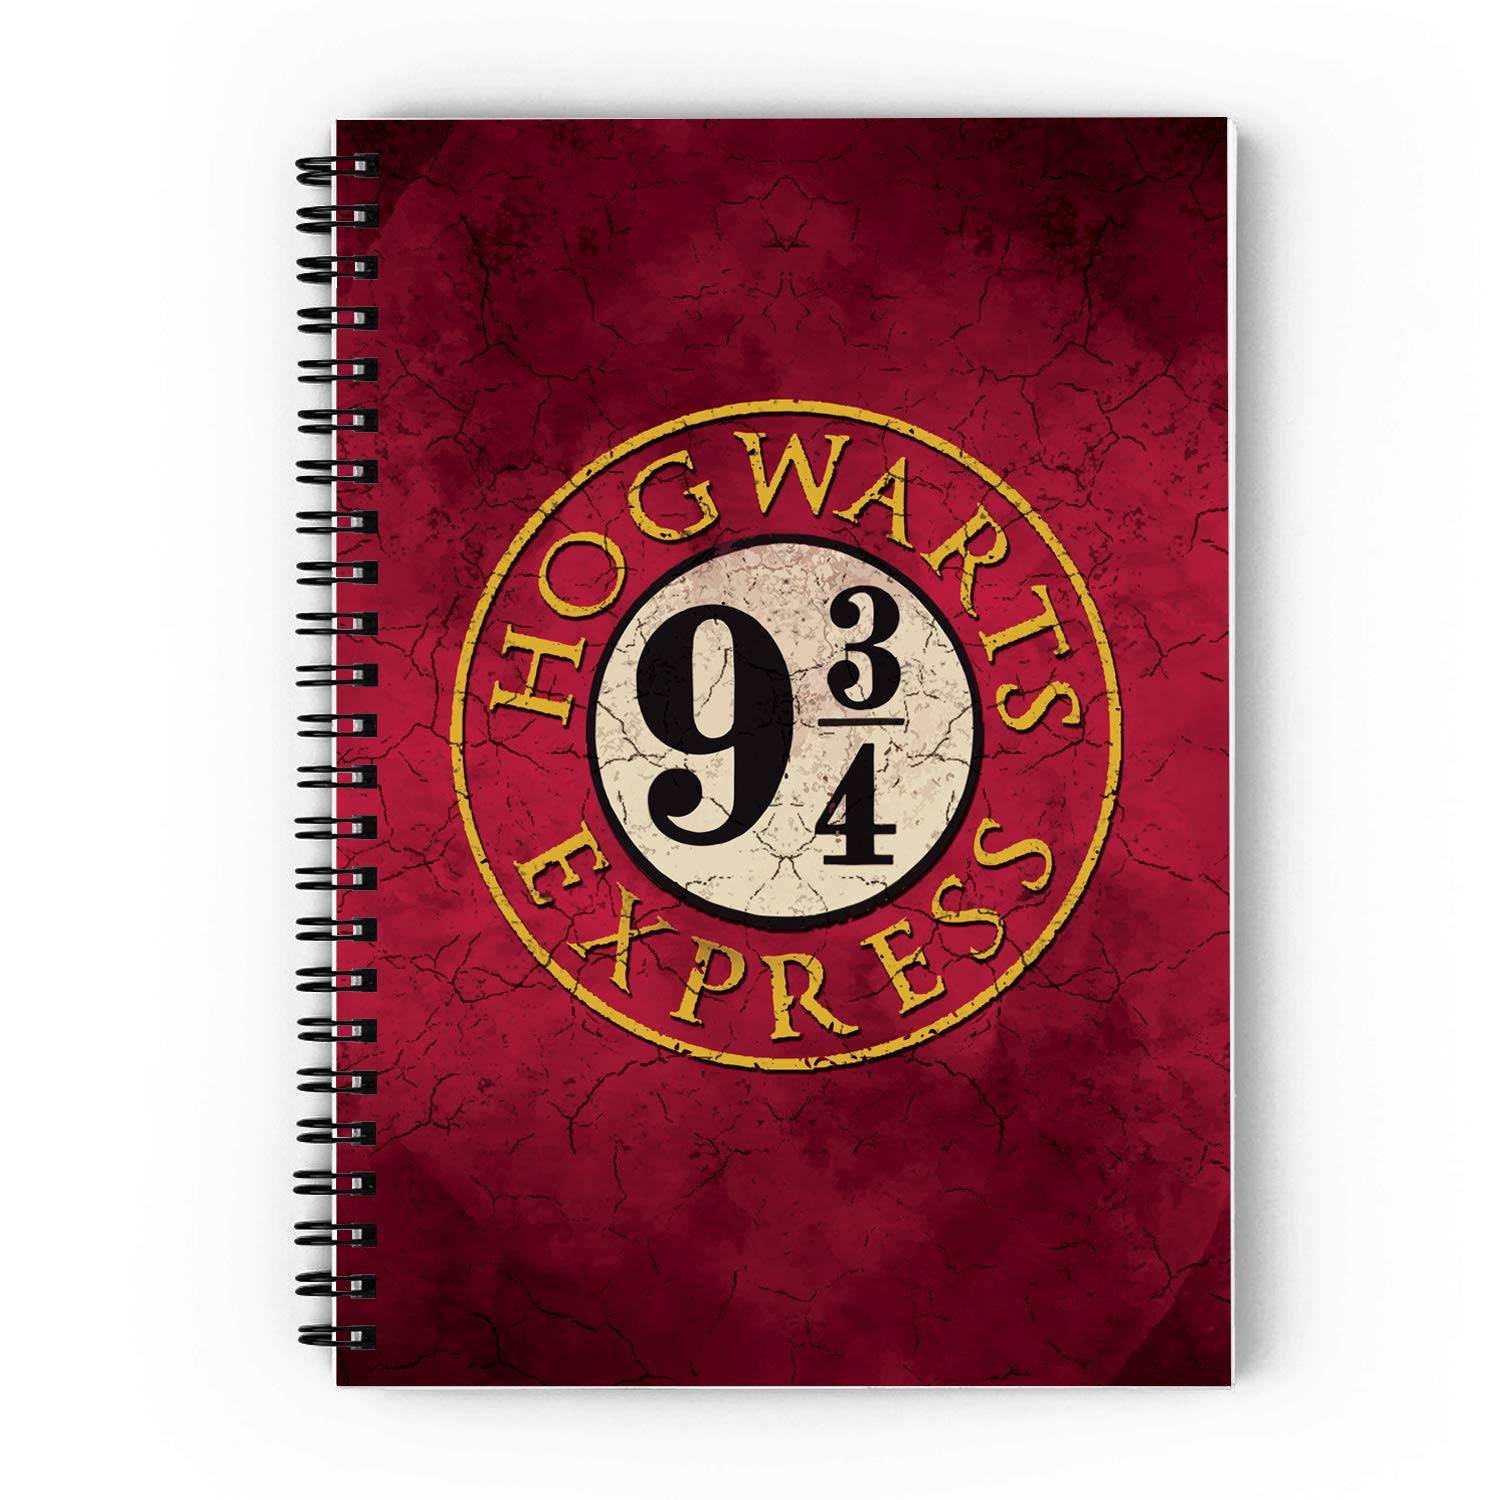 Hogwarts Express Spiral Notebook